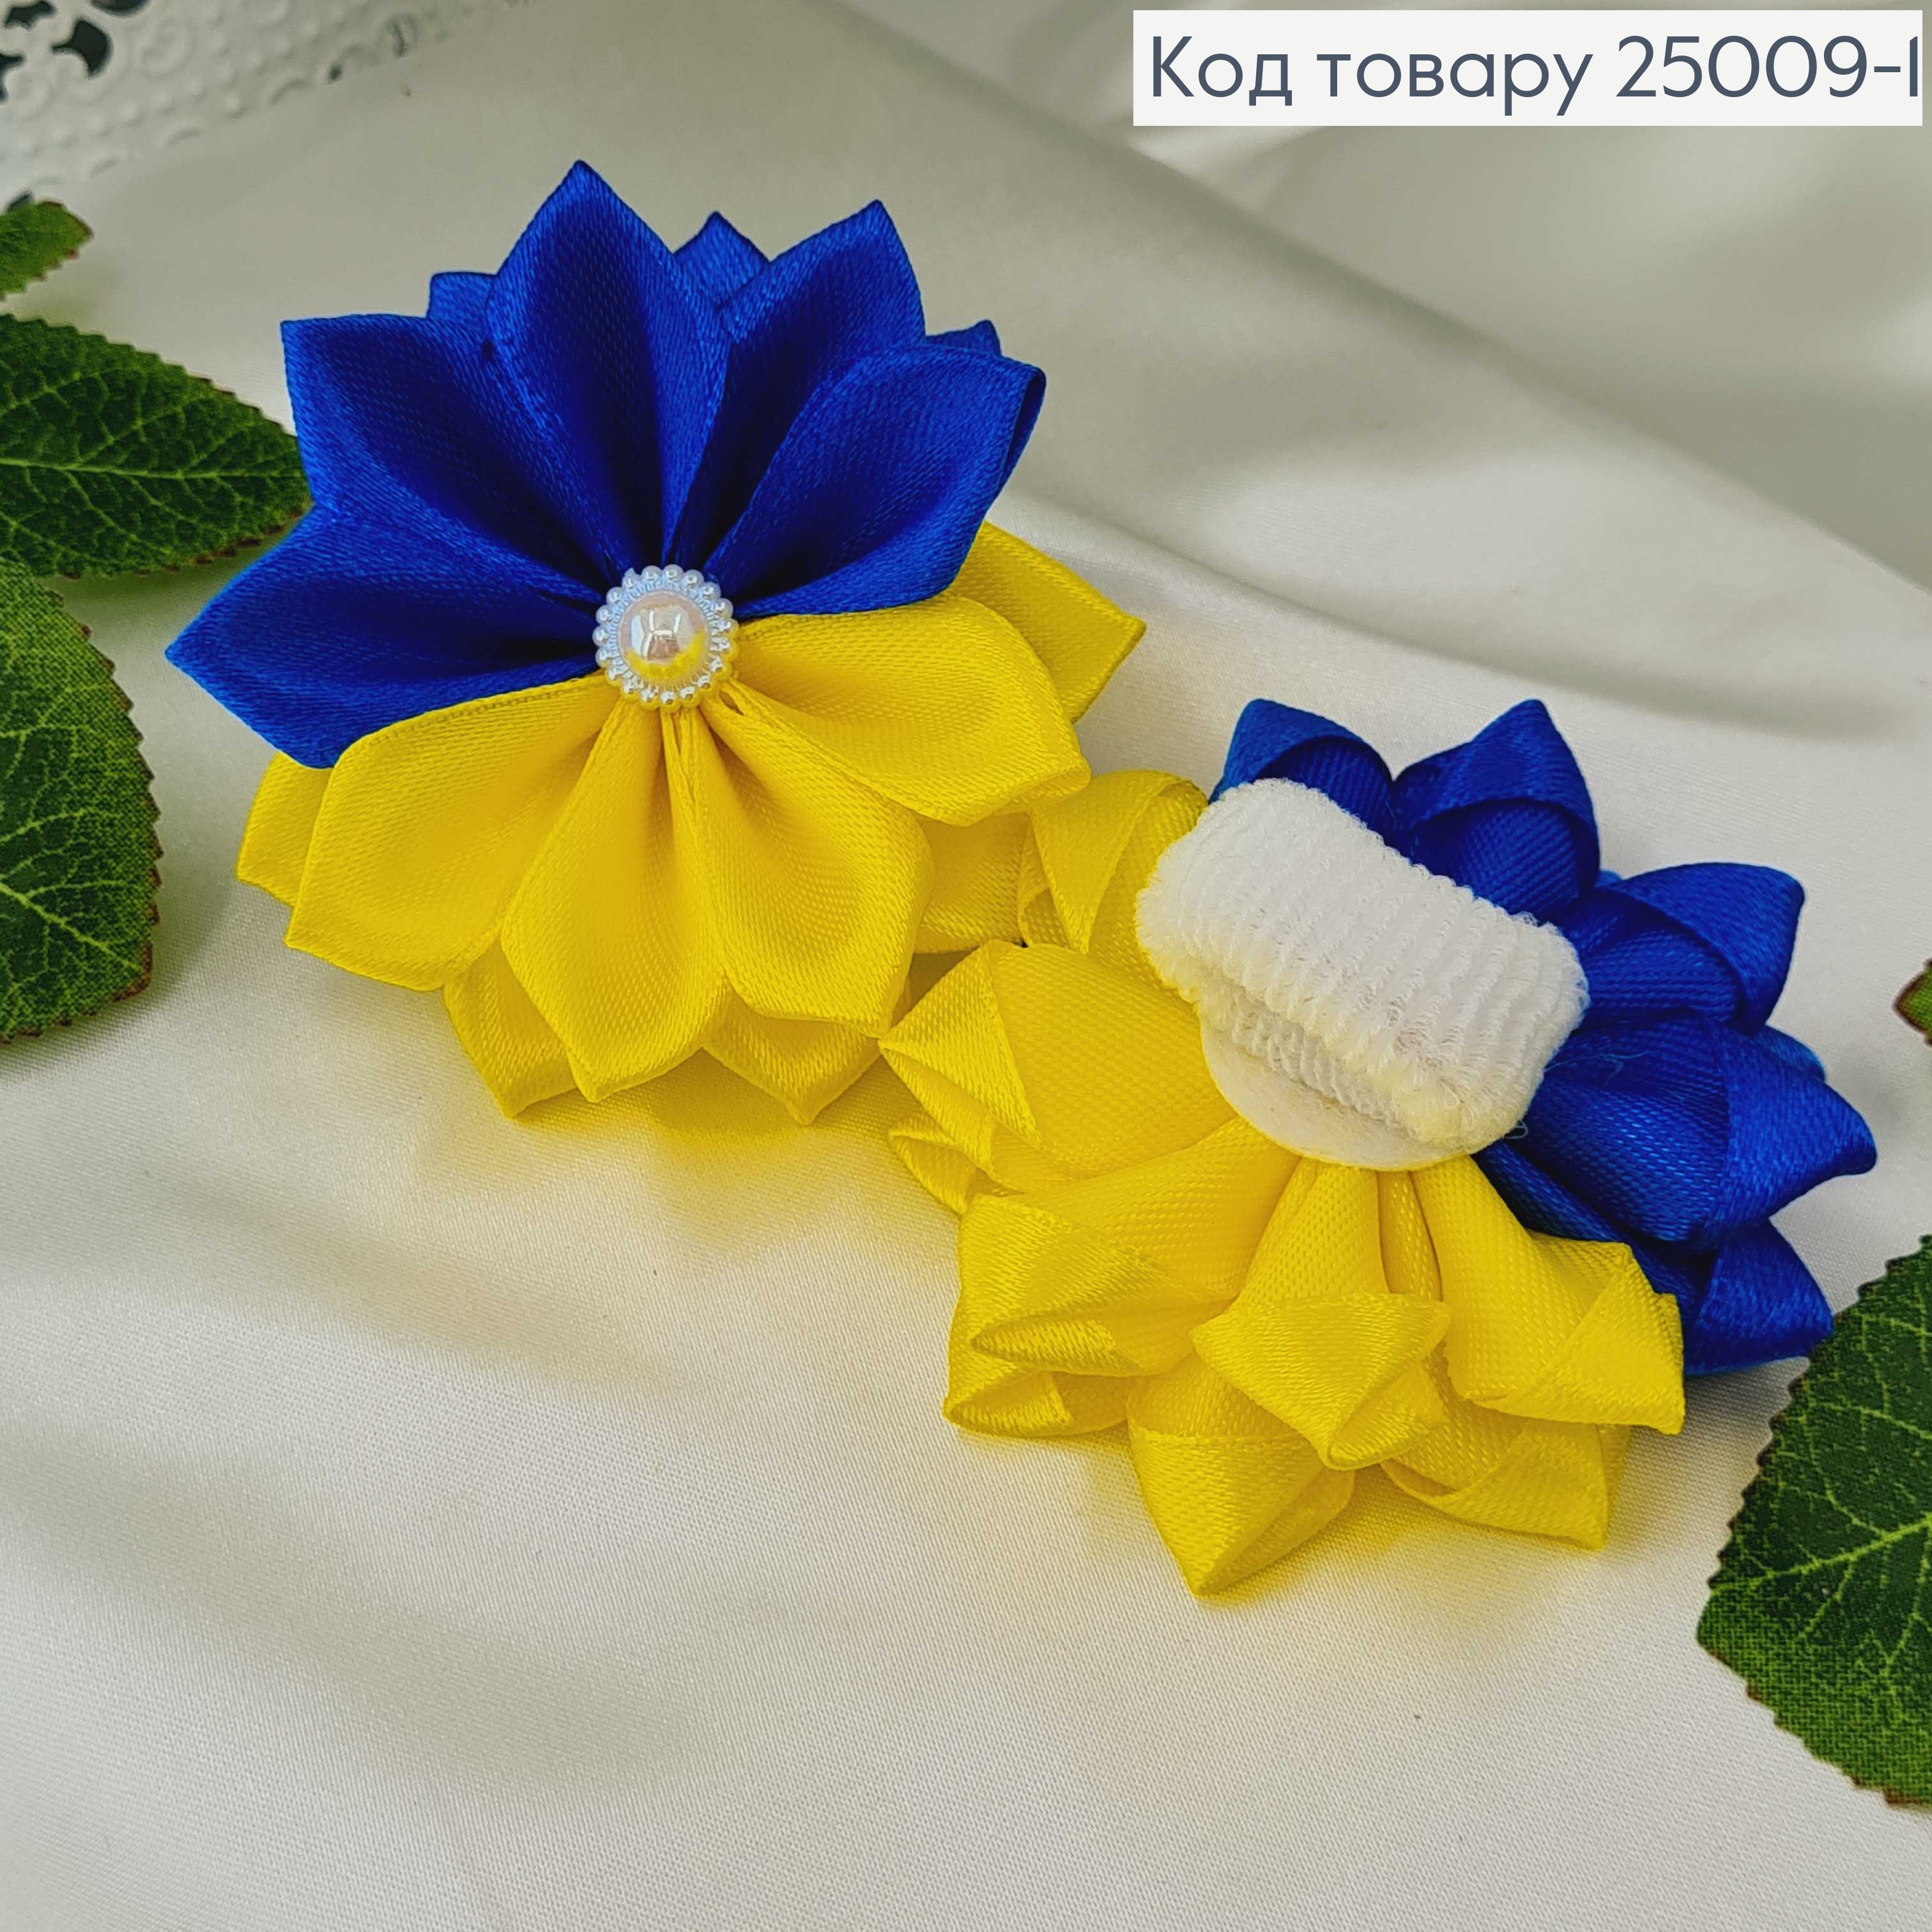 Резинка ЖЕЛТО-СИНЯЯ цветок 6см, ручная иработа, Украина 25009-1 фото 2